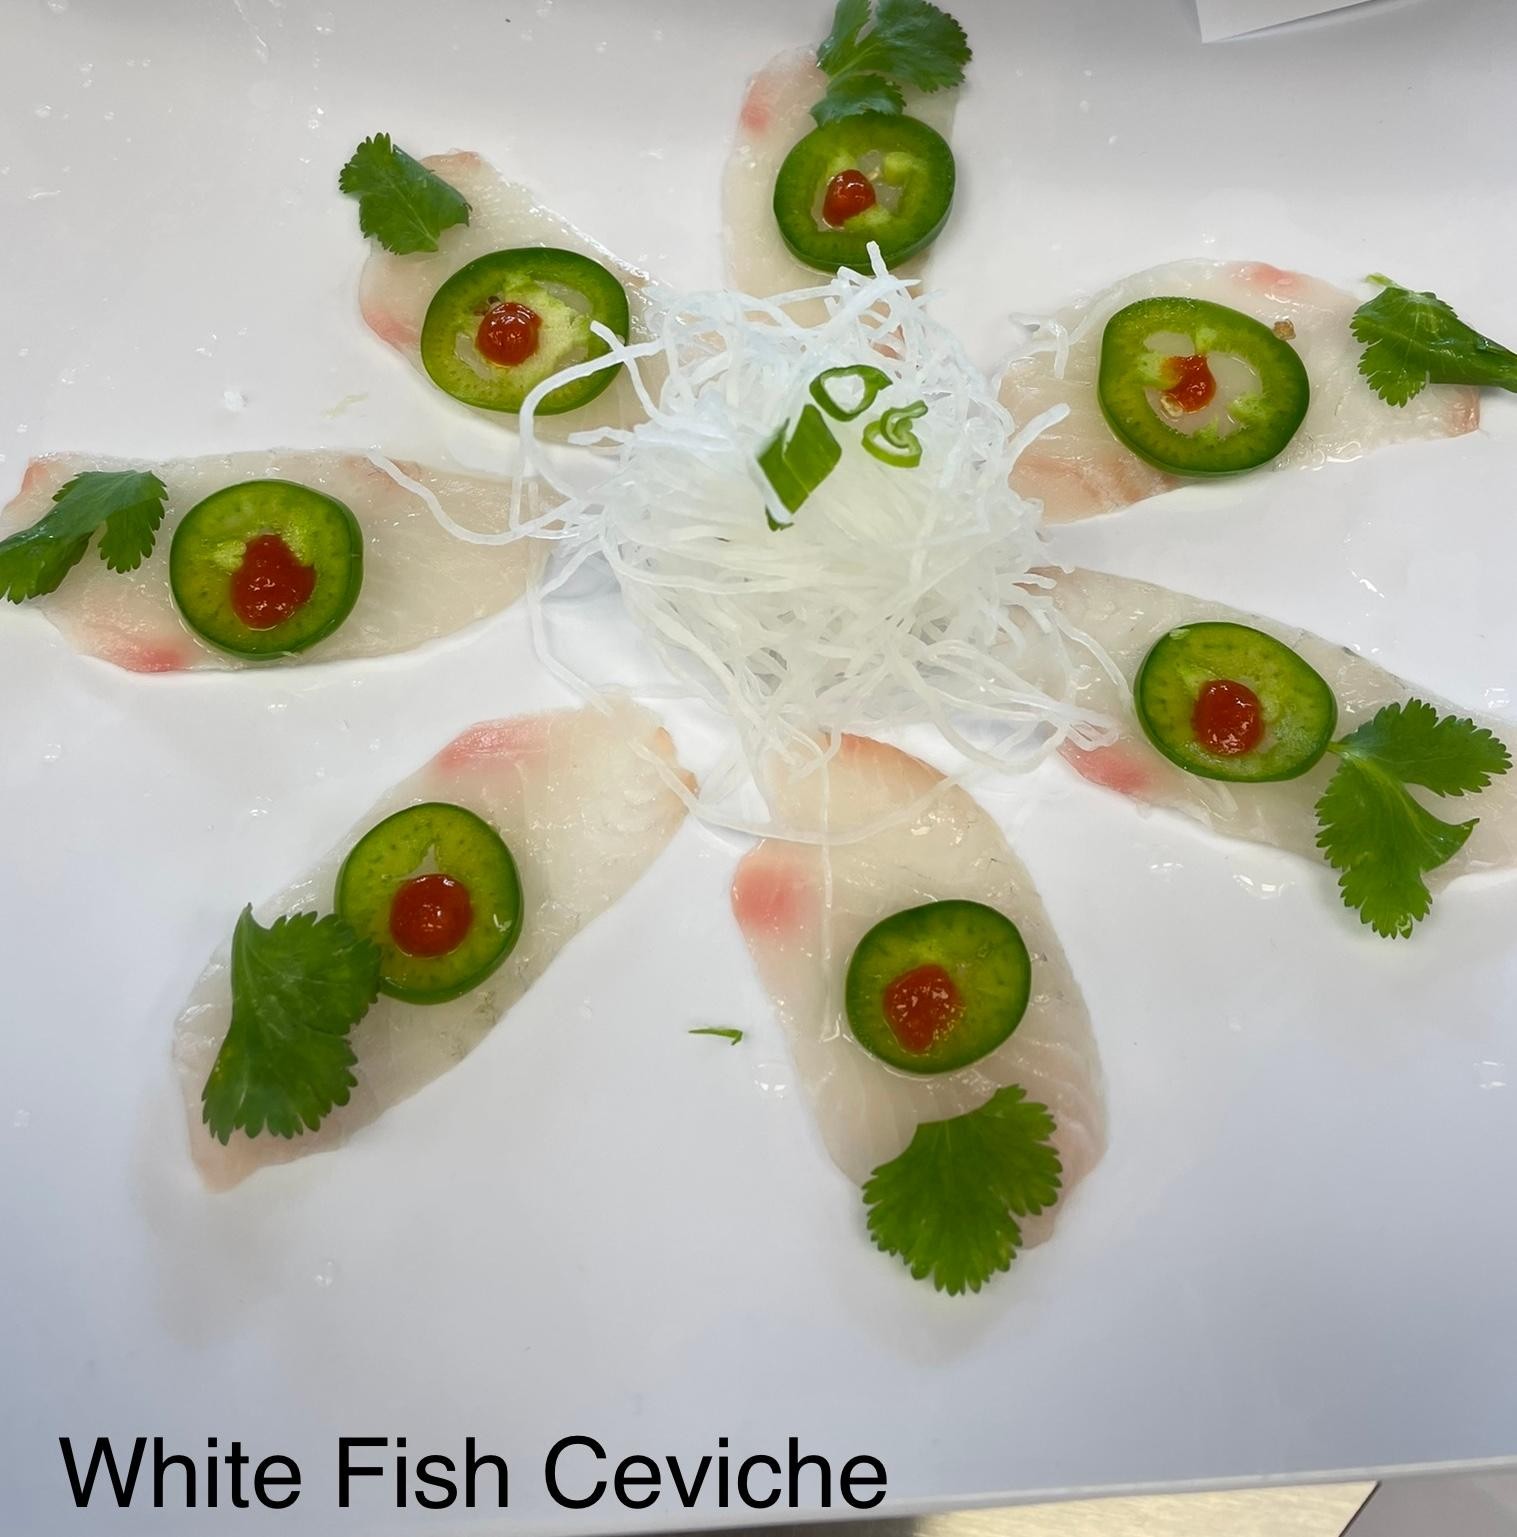 White fish ceviche